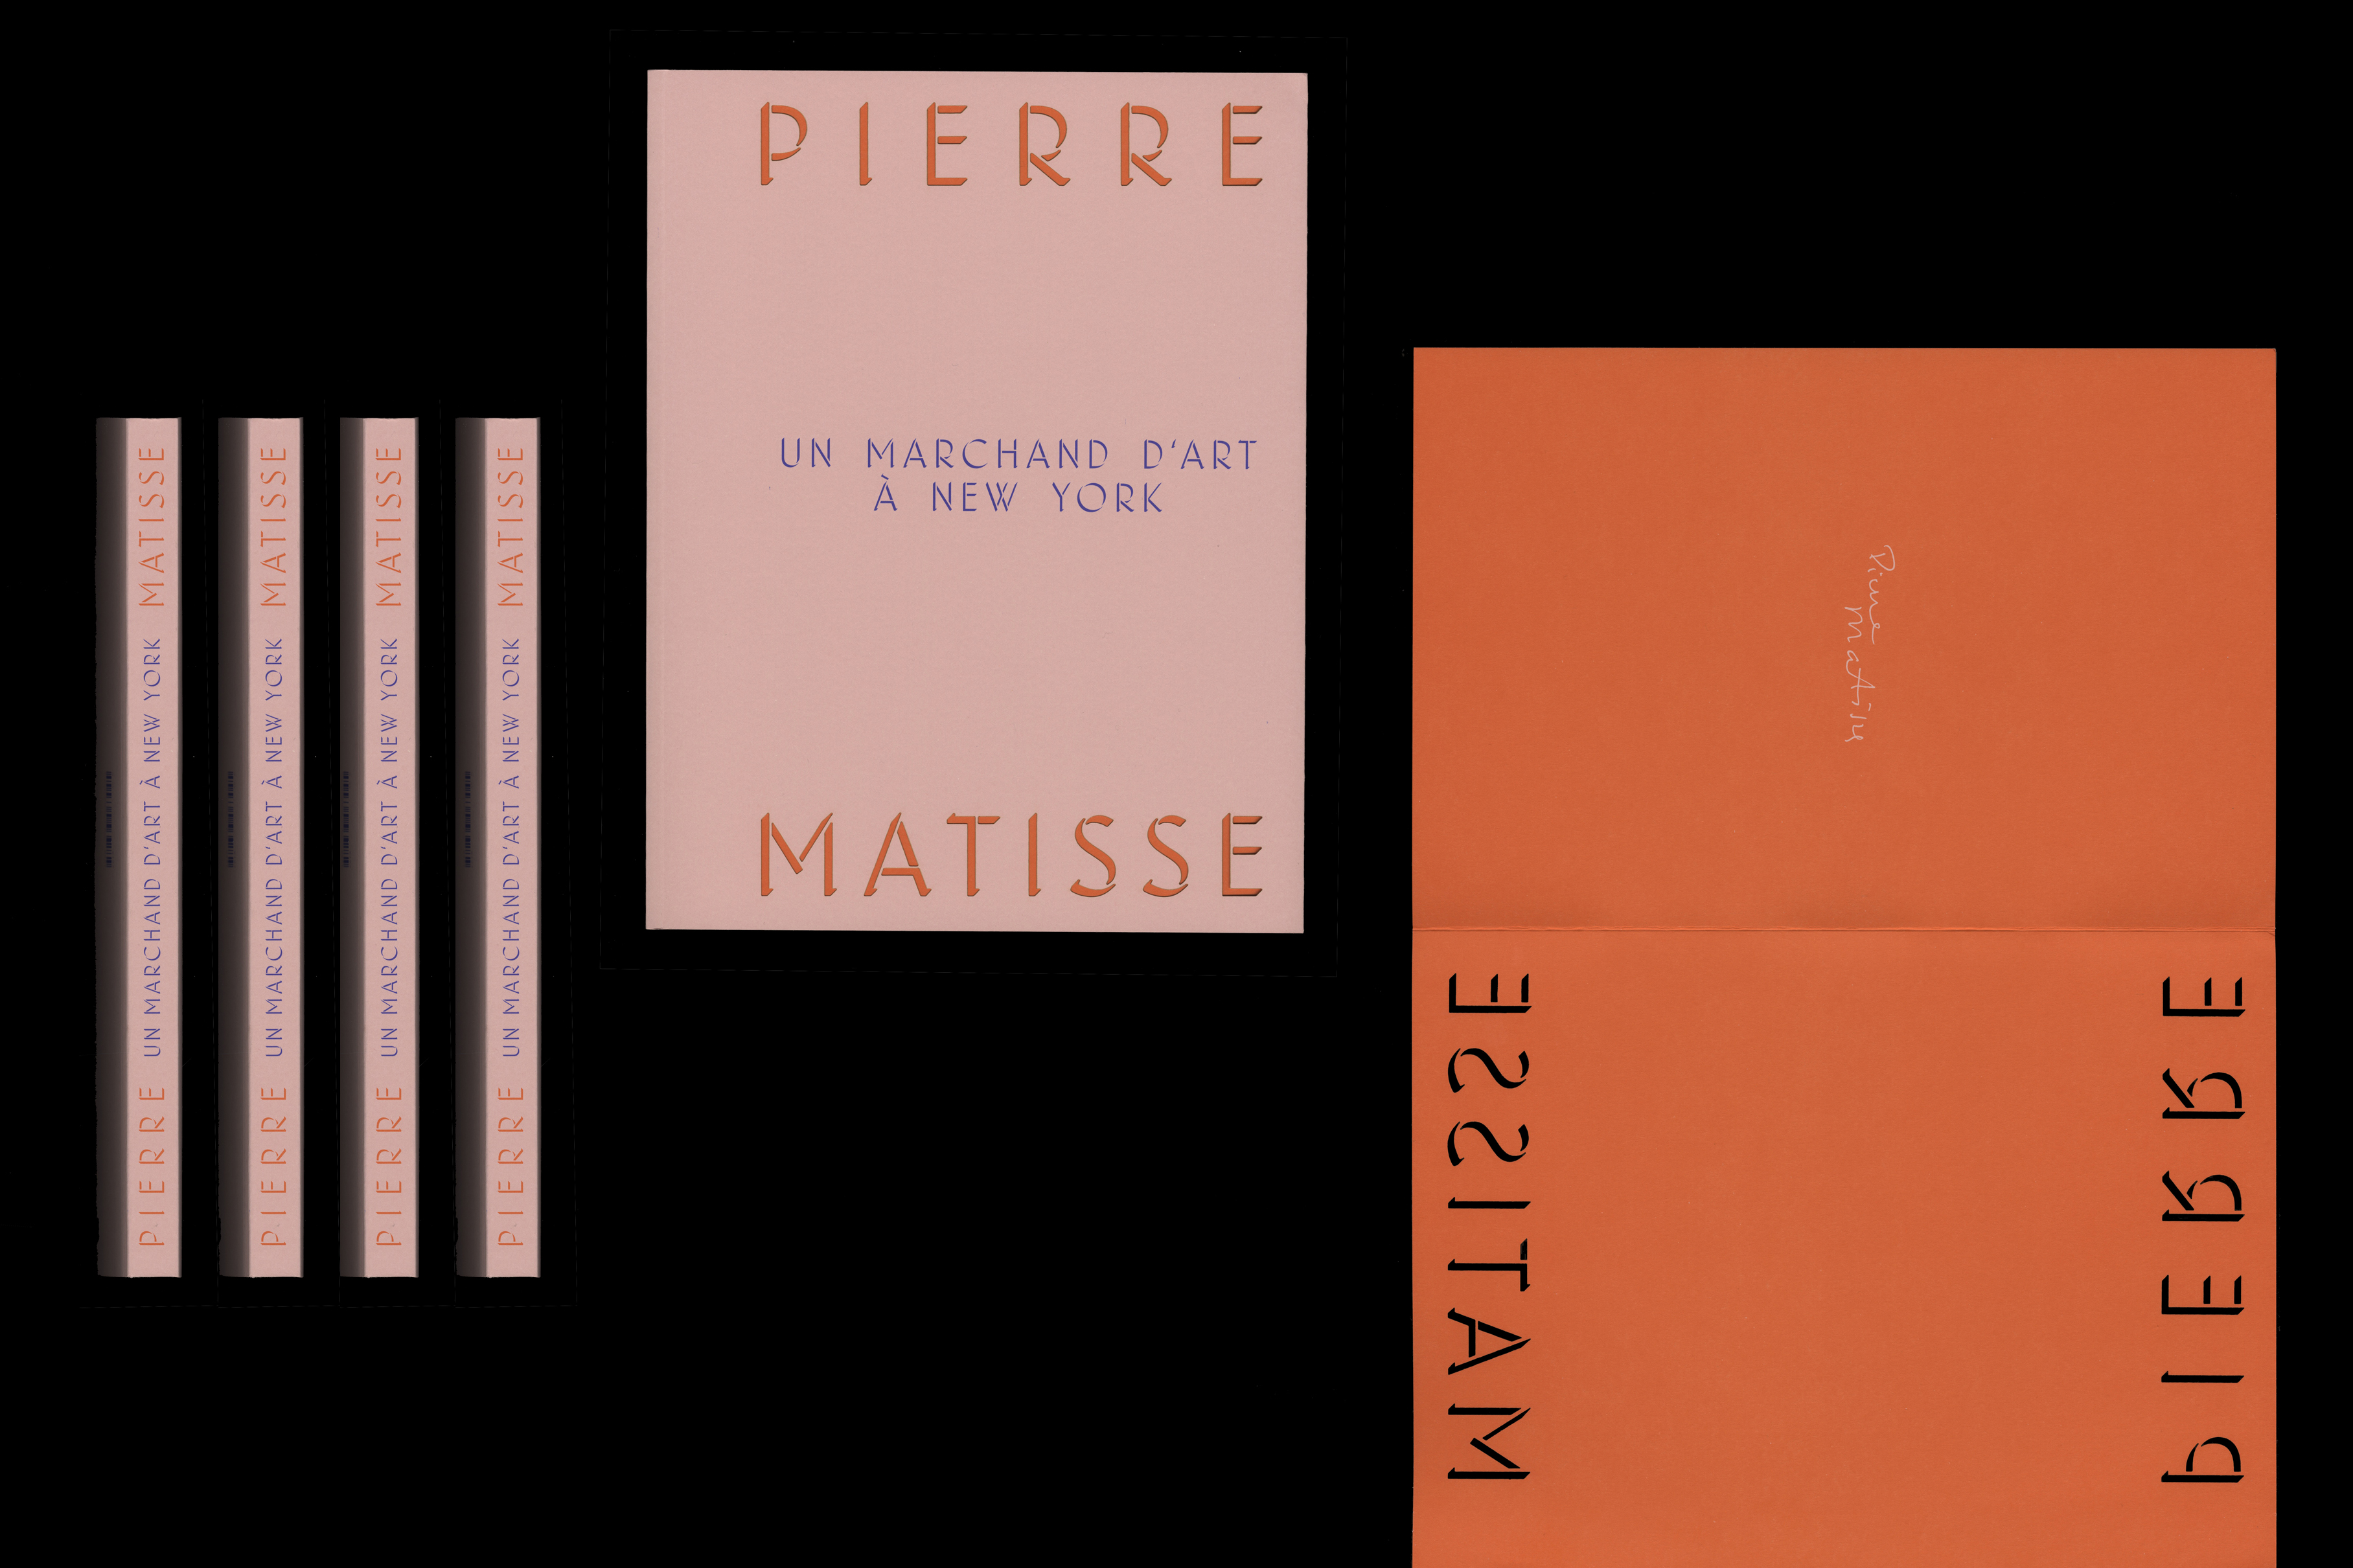 Pierre Matisse